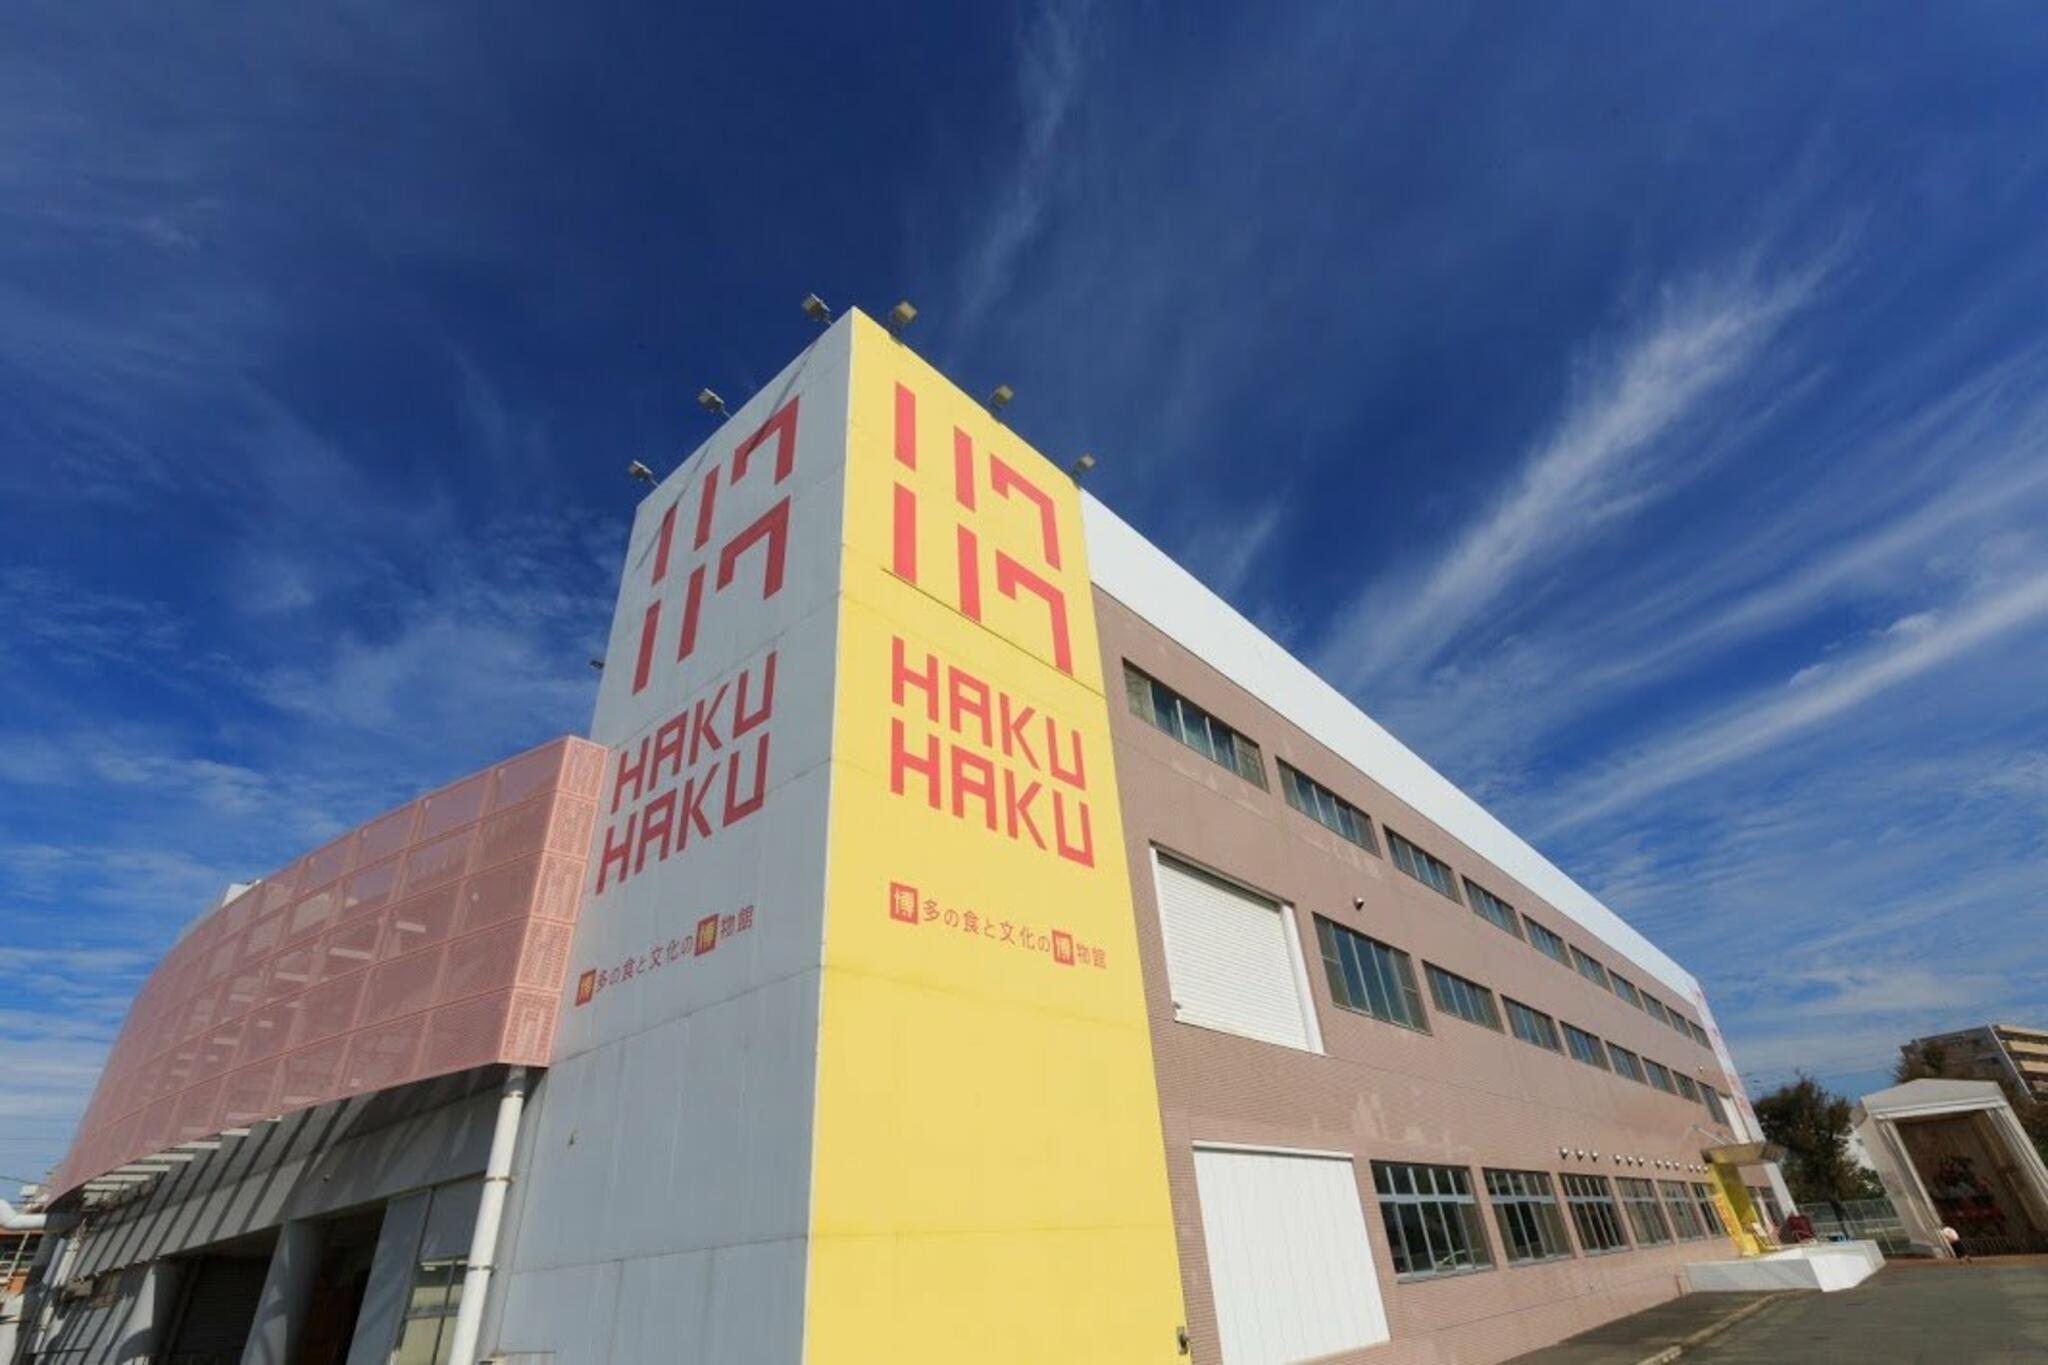 博多の食と文化の博物館ハクハクからのお知らせ(10月28・29日ハクハクマルシェ開催します)に関する写真